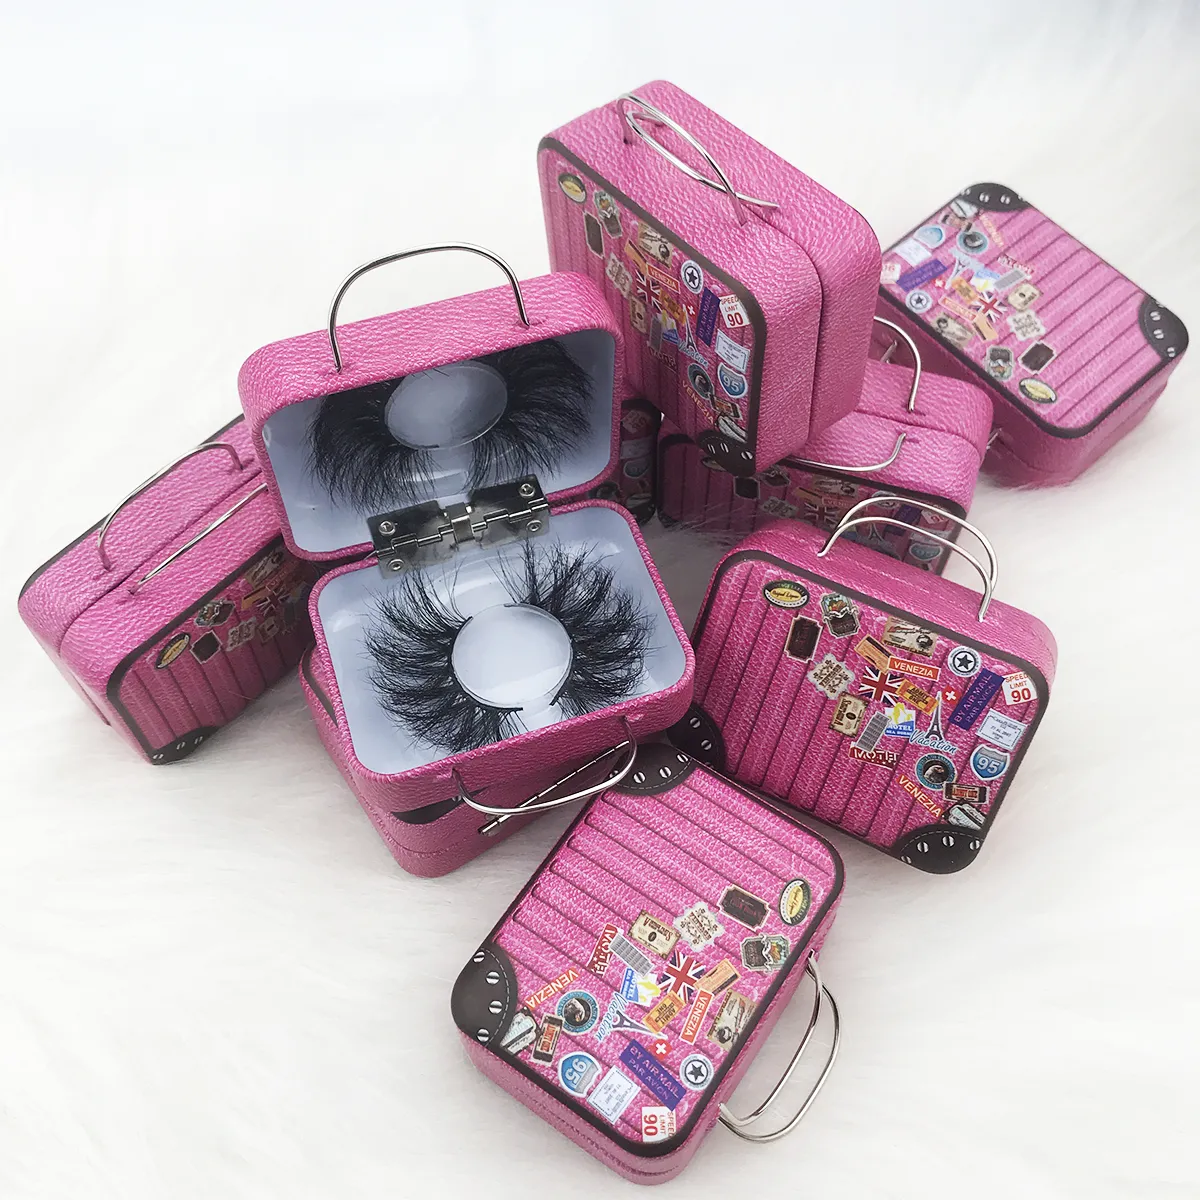 Novo design 3D / 5D / 6D mink cílios caso embalagem pequena mala para empacotamento, pacote Lashes na mala de bagagem caixa pacote mala